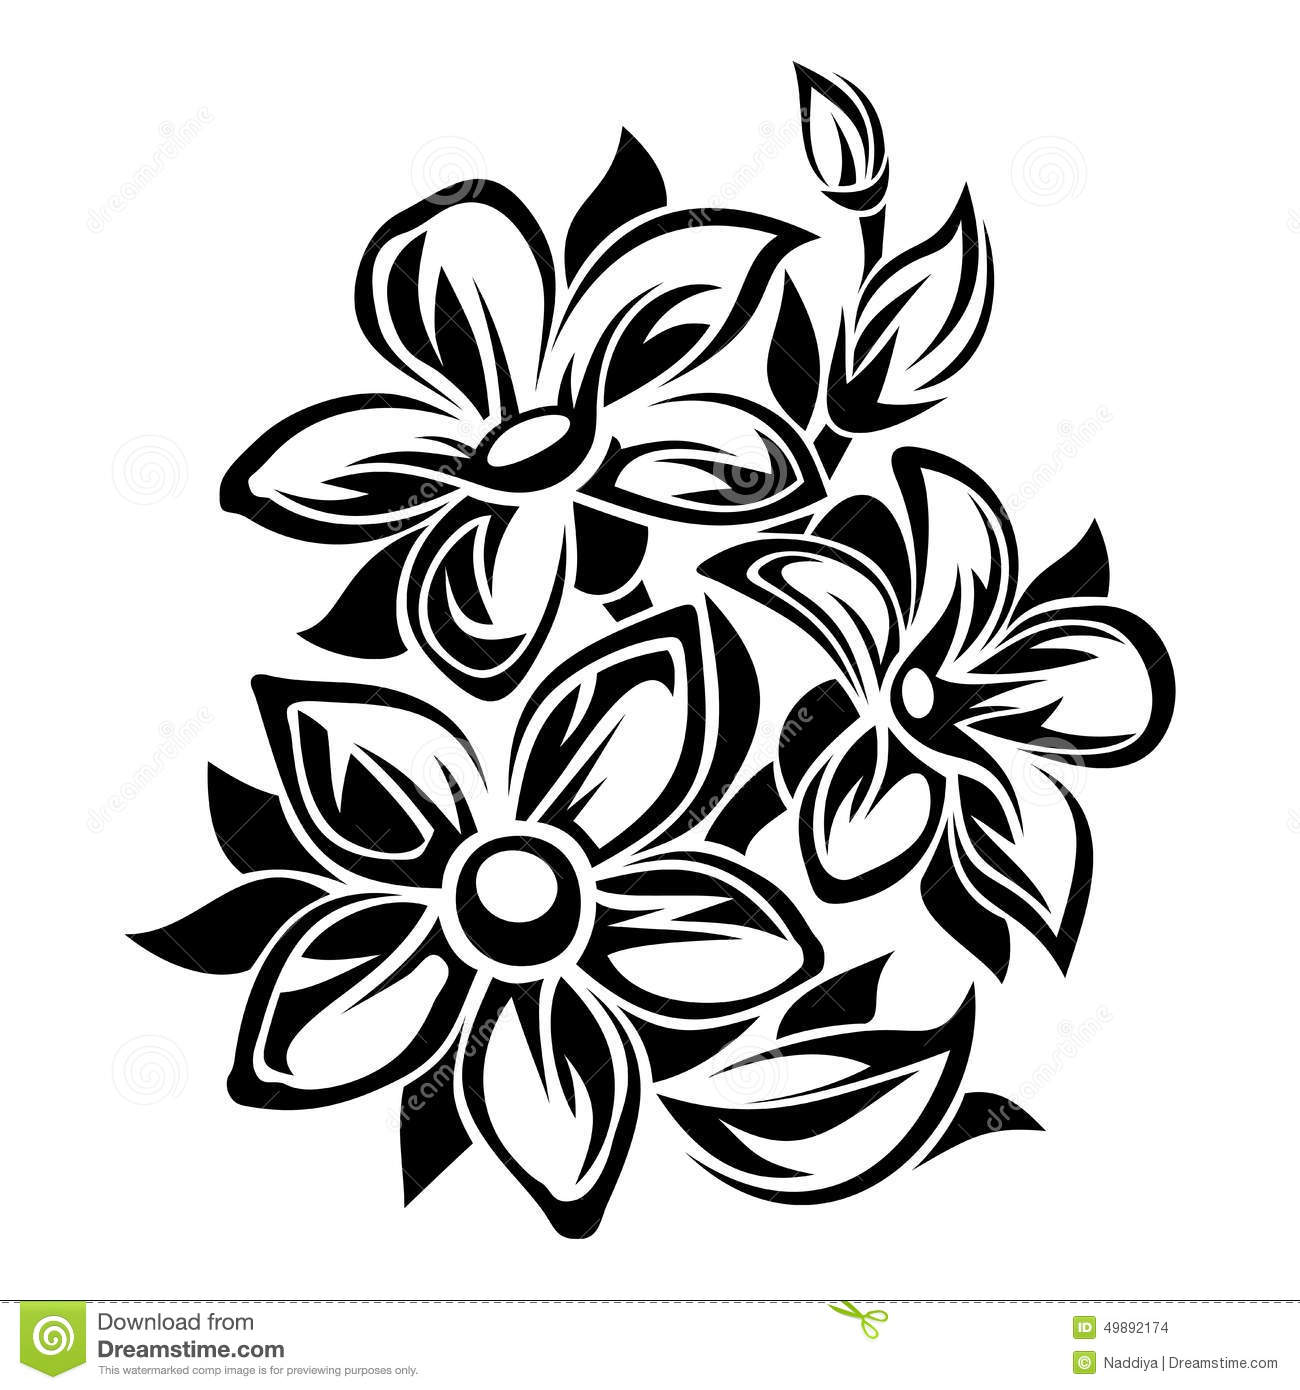 Flower Illustration Black and White